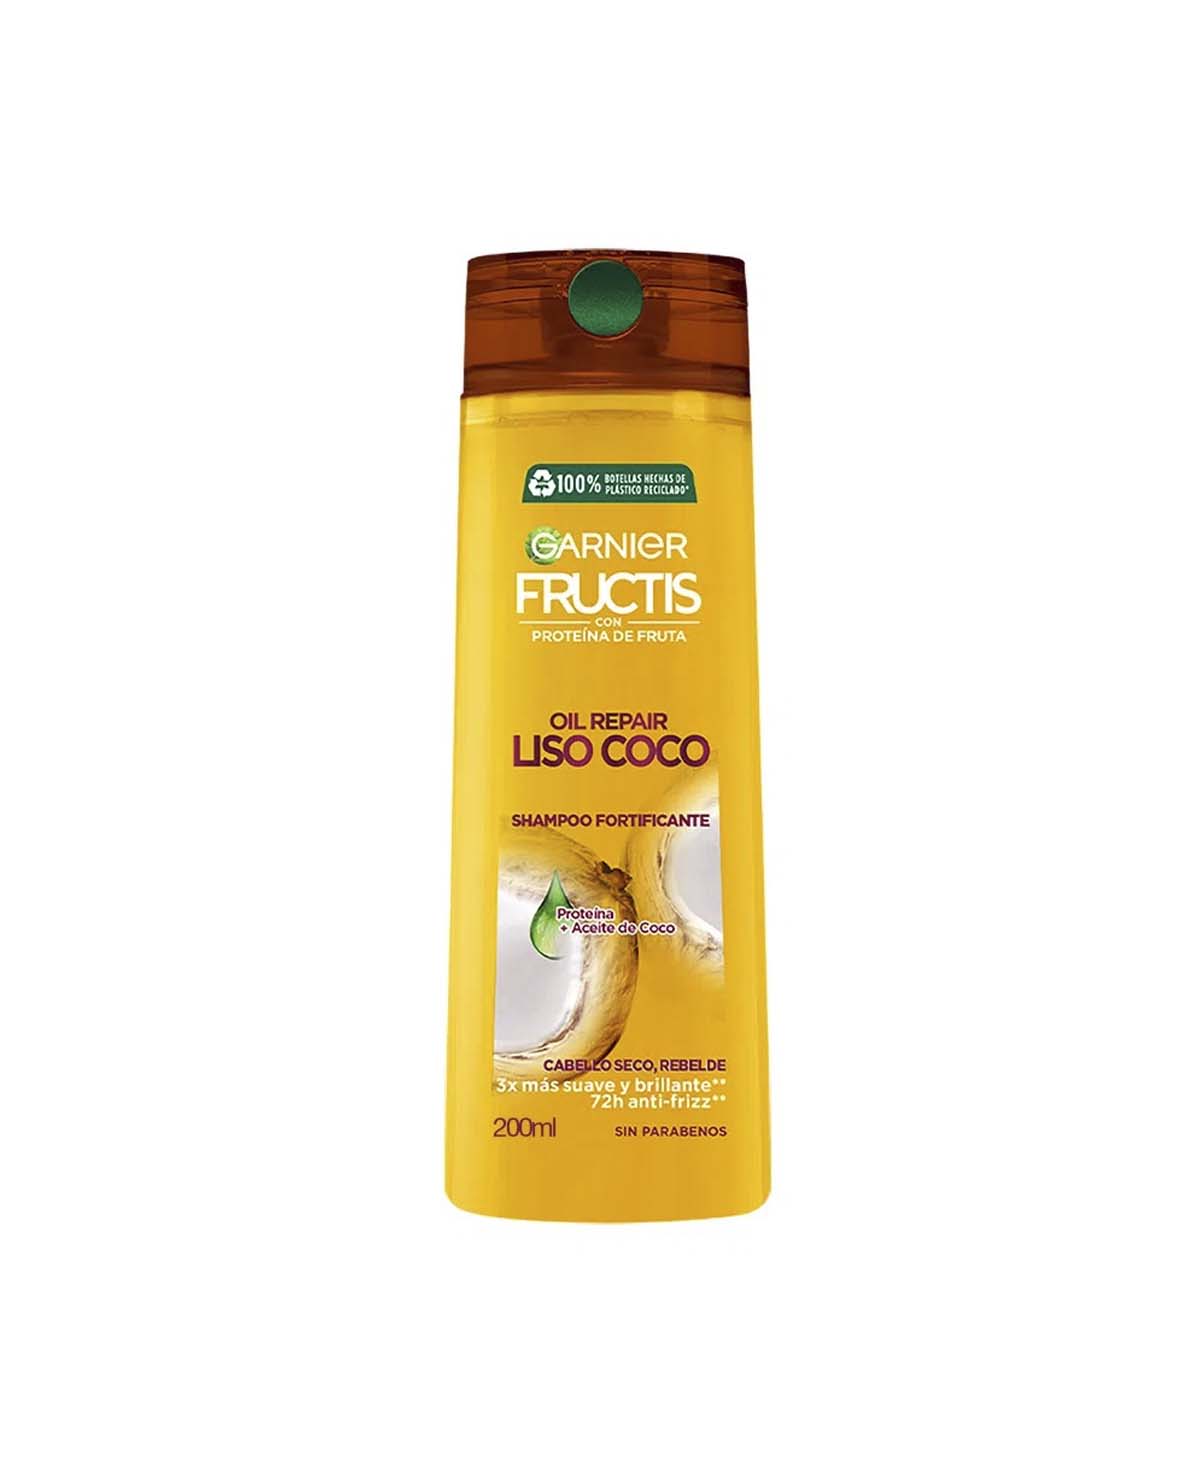 Shampoo Granier Fructis Ch Liso Coco x 200 Cm3 Nc